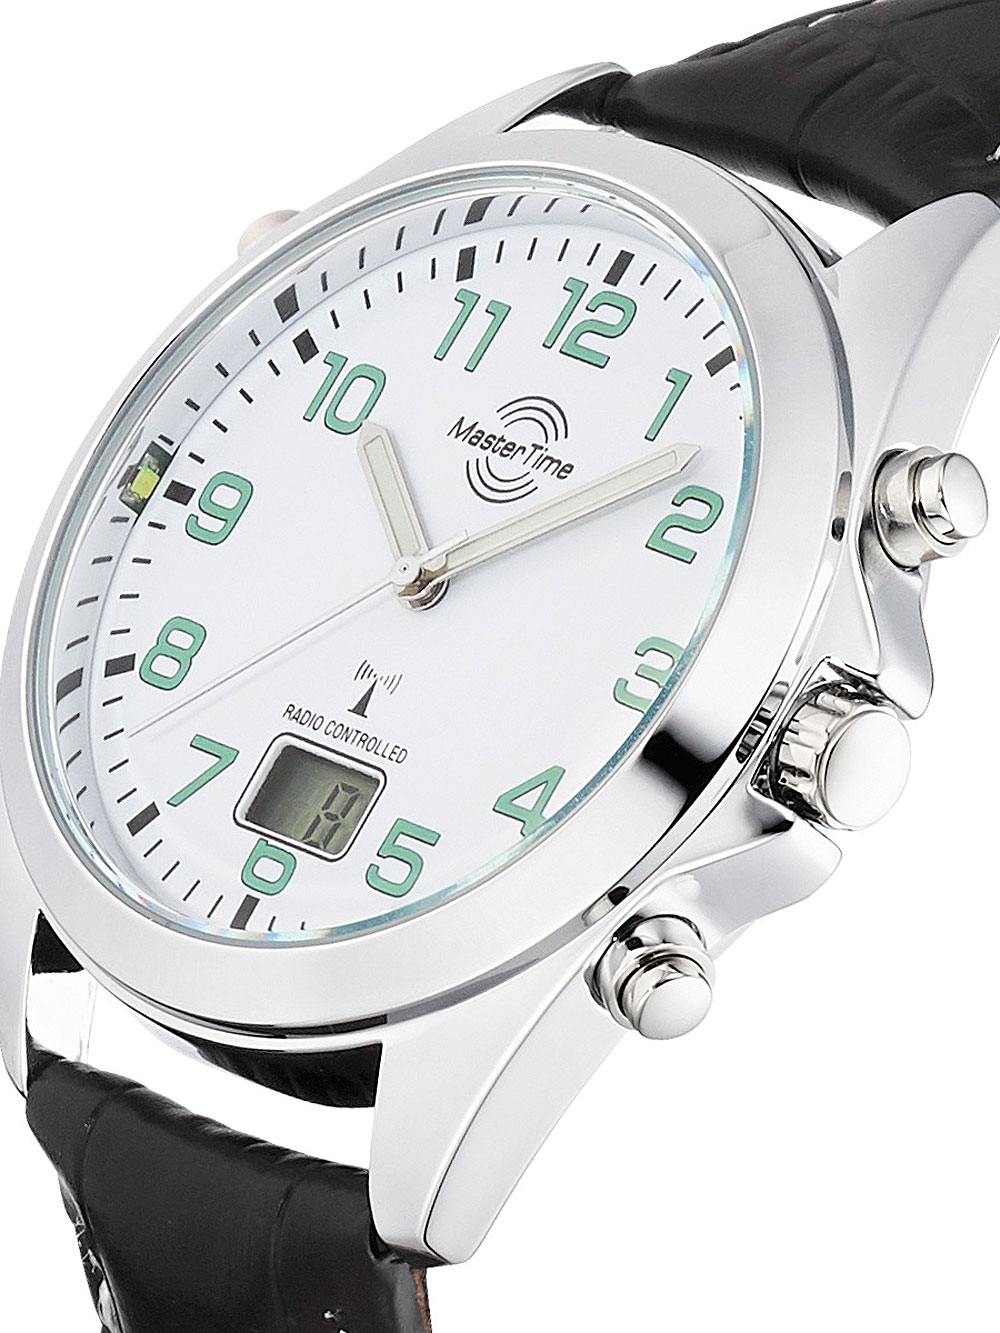 отзывы, цены Мужские Time наручные в в на Украине Киеве, купить брендовые часы Master ROZETKA: часы